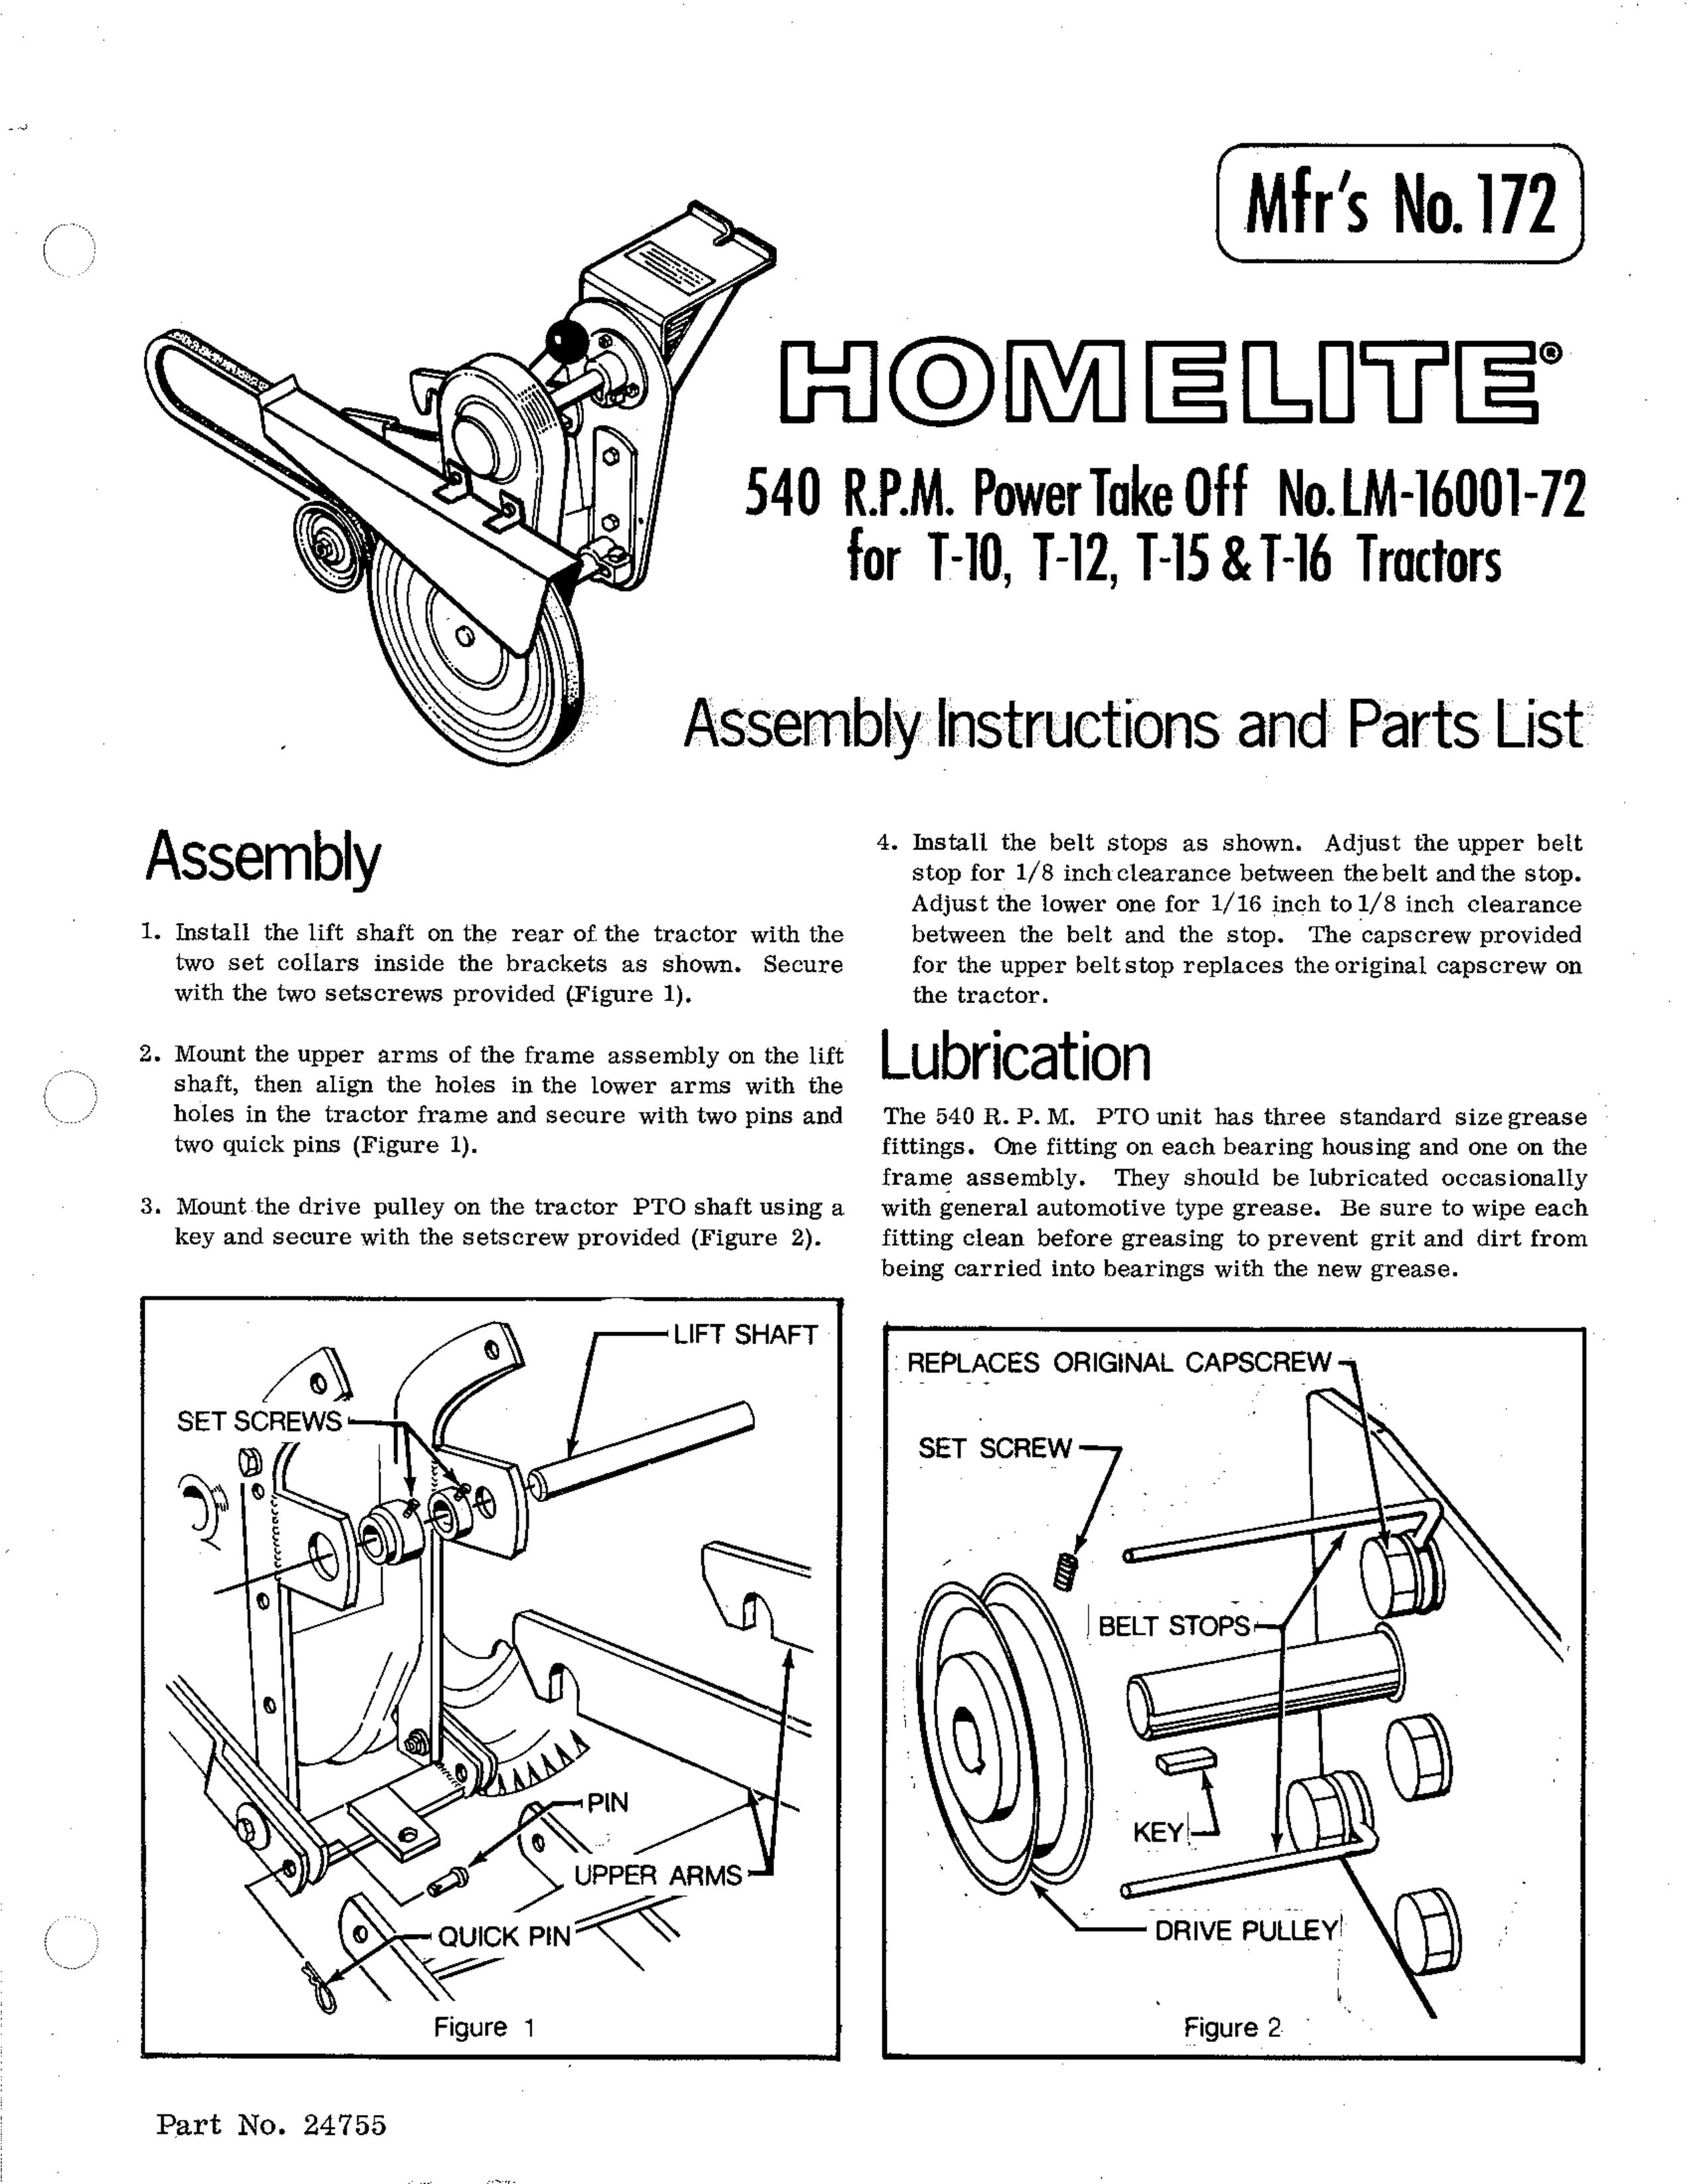 Homelite 172 Lawn Mower User Manual